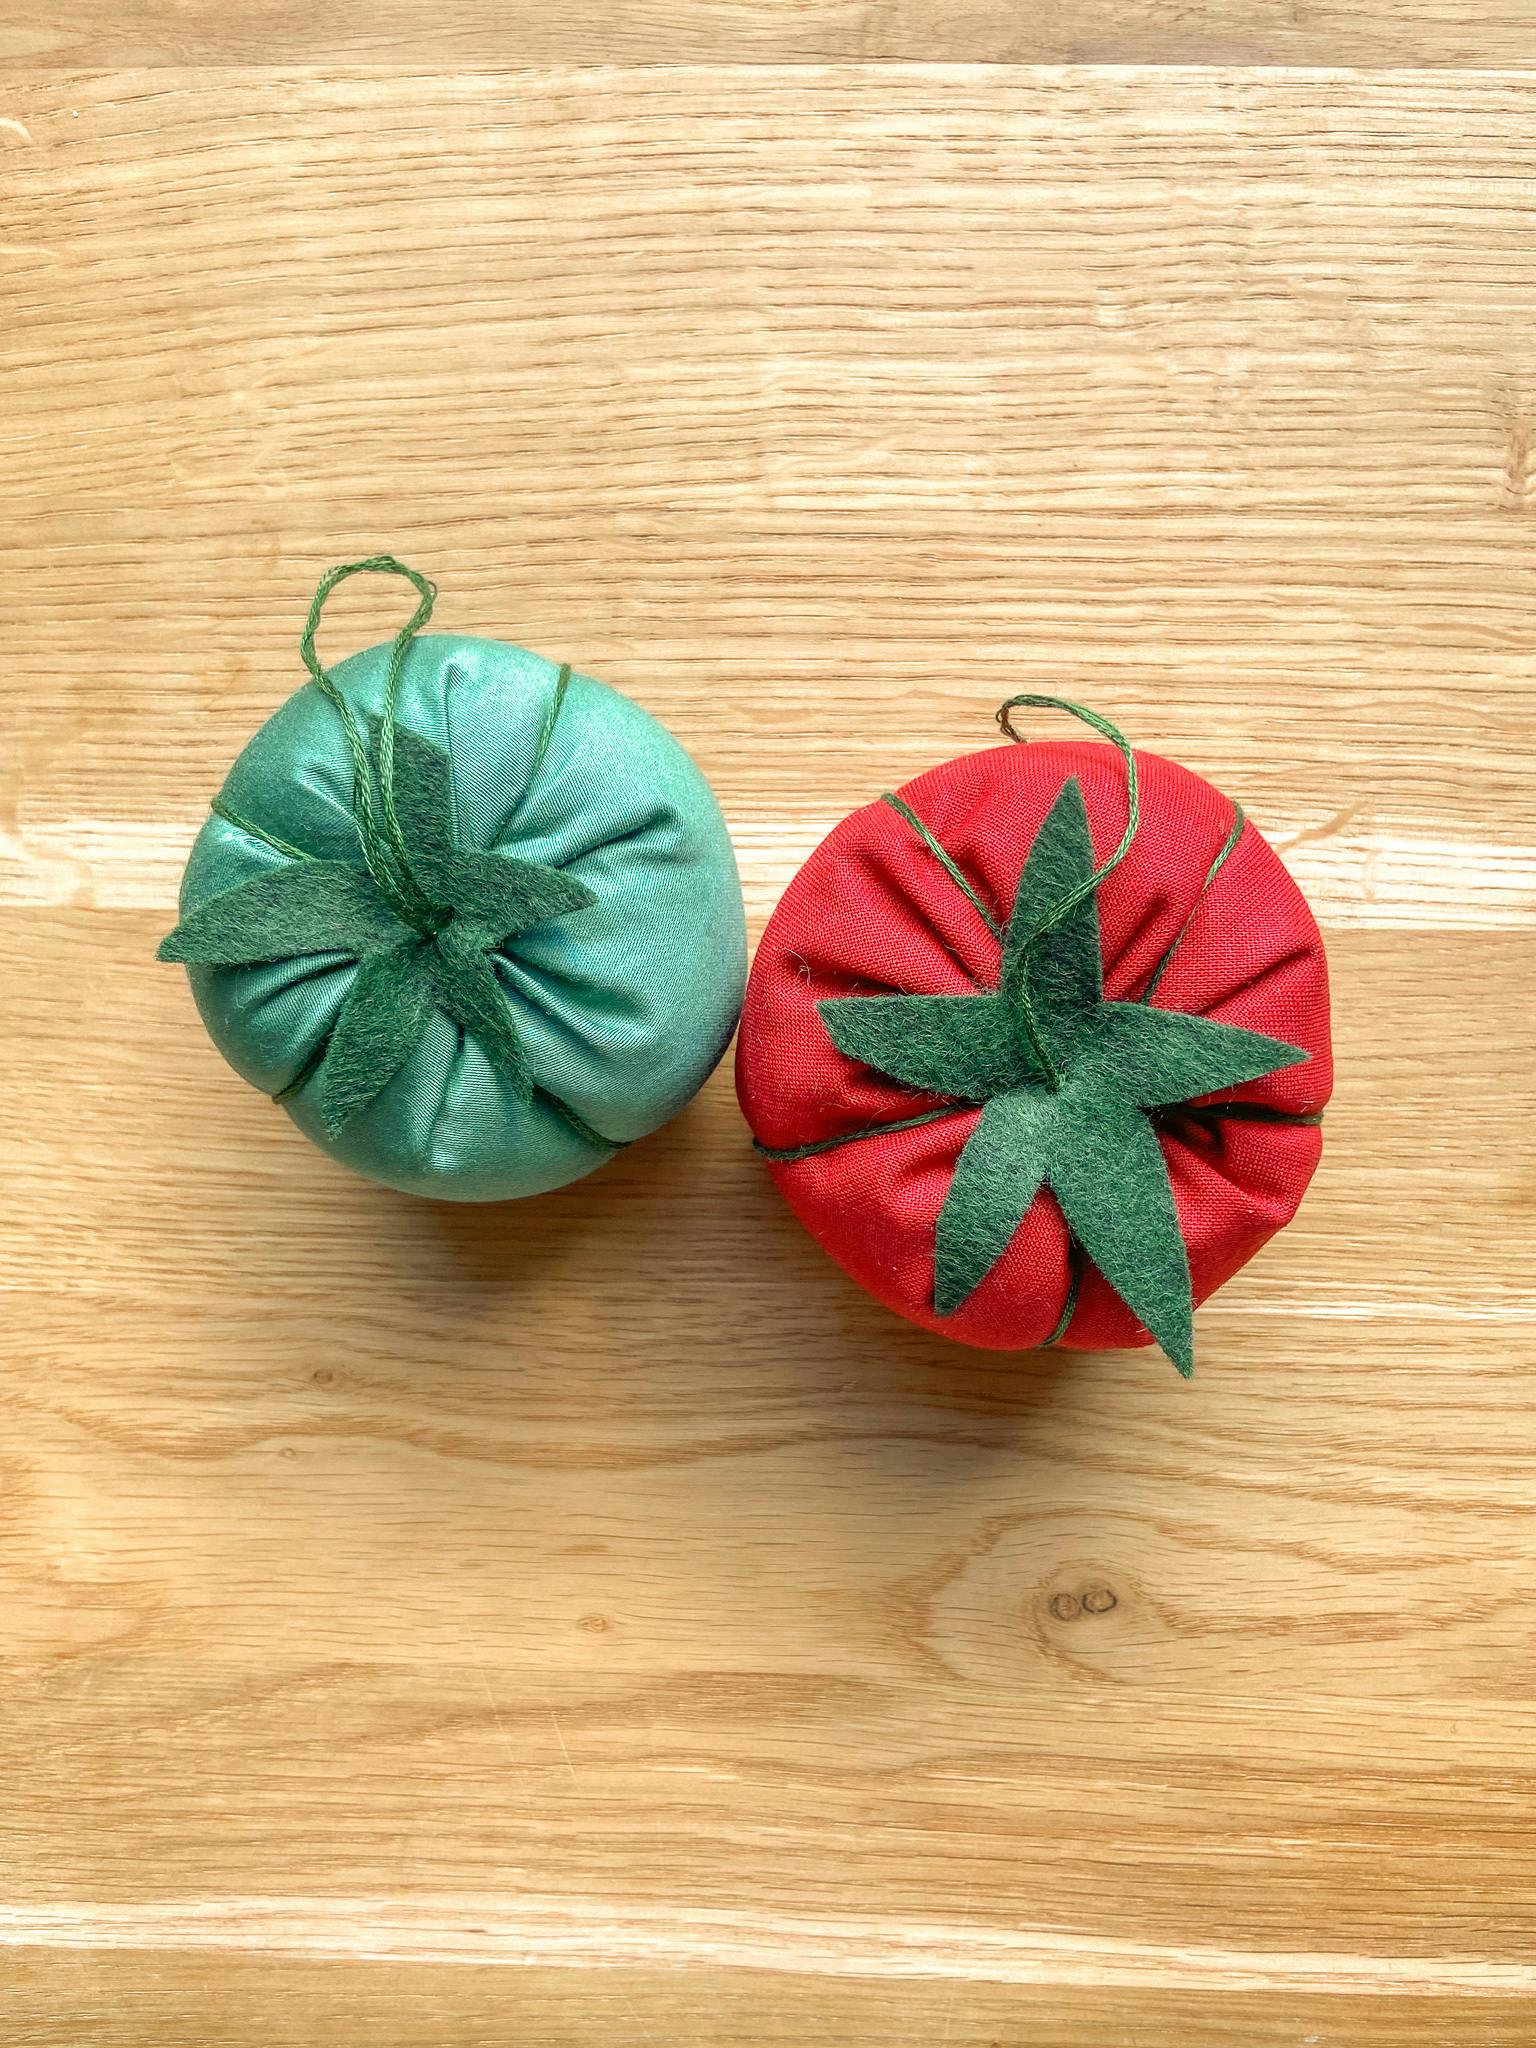  Puntaspilli a forma di pomodoro di colore verde e rosso su un tavolo di legno